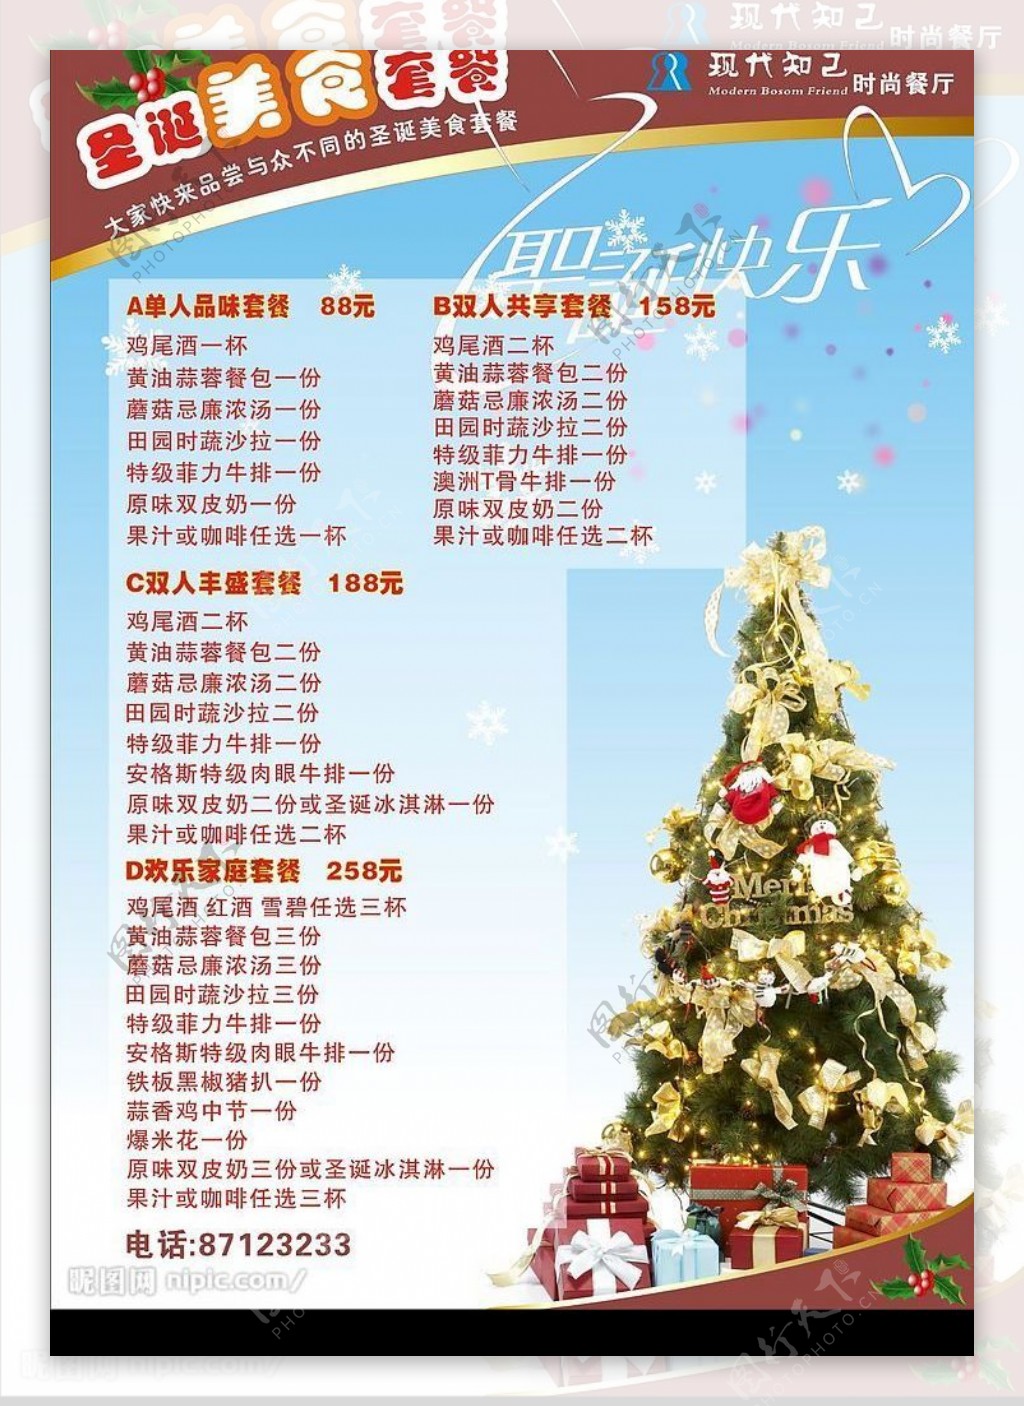 宣传单圣诞菜单圣诞树丰盛套餐图片